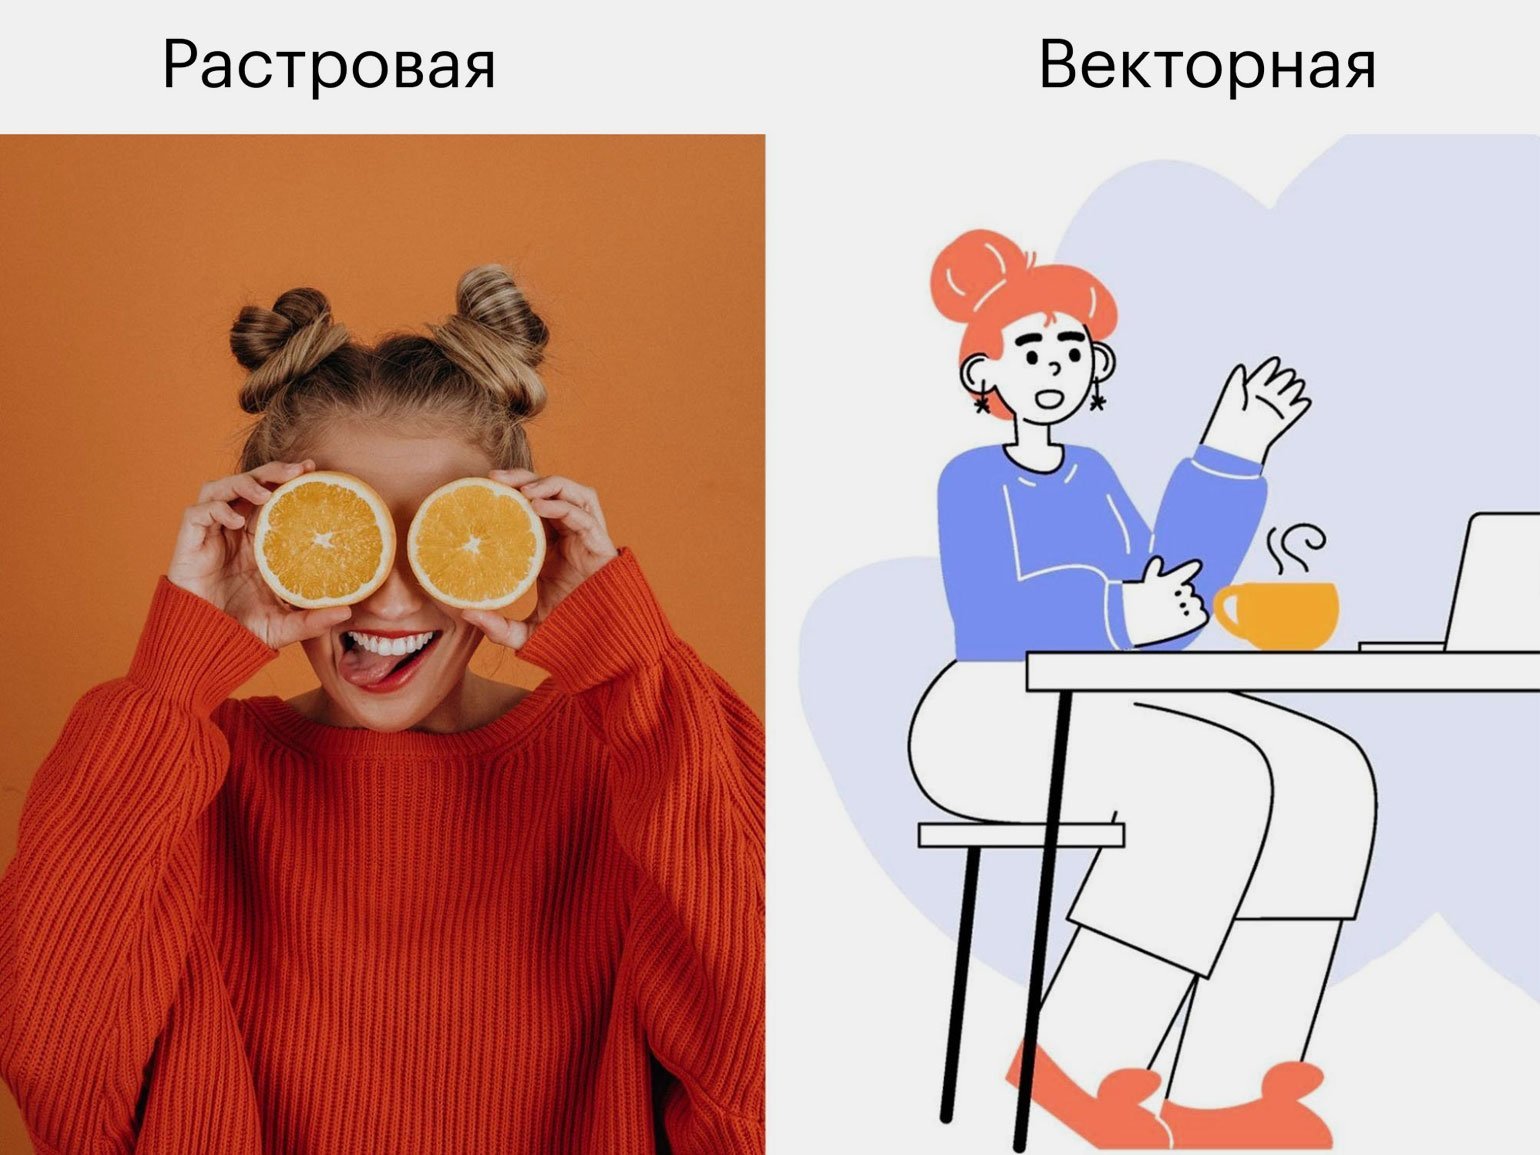 Фотография девушки с апельсинами — растровая графика. Изображение девушки за столом — векторная графика.